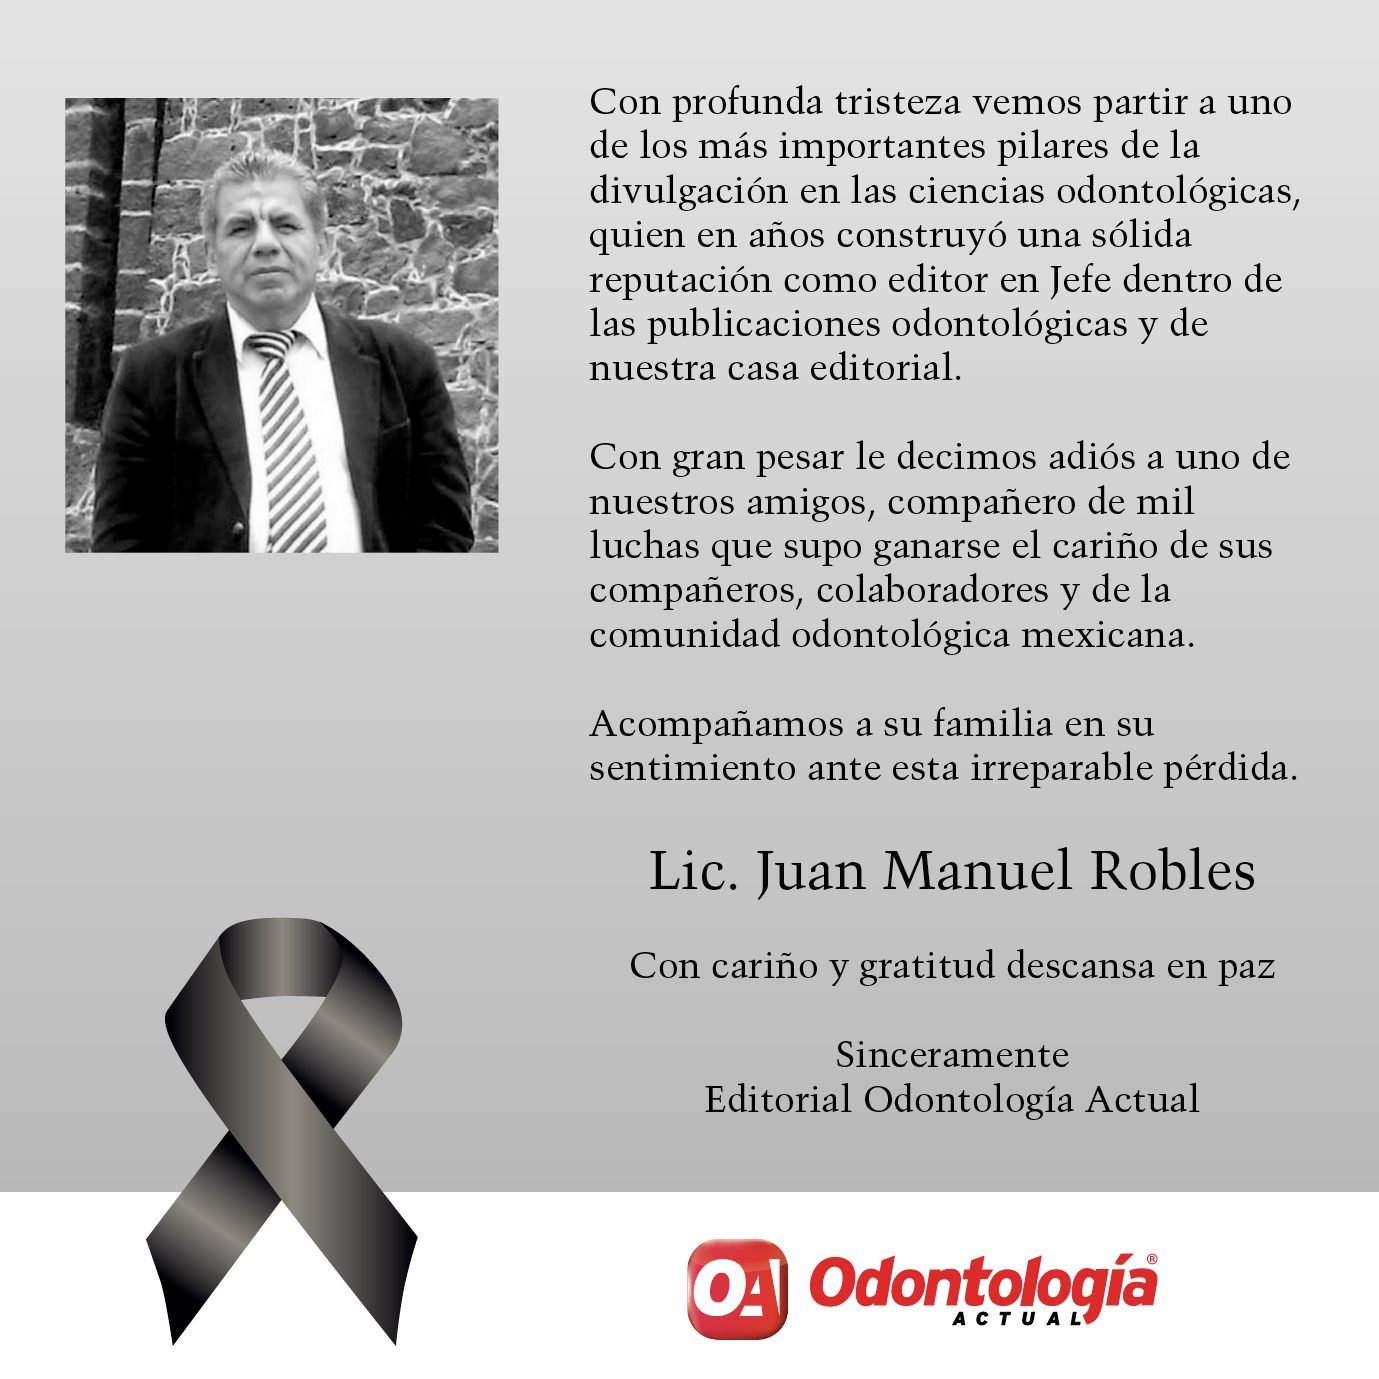 Juan Manuel Robles